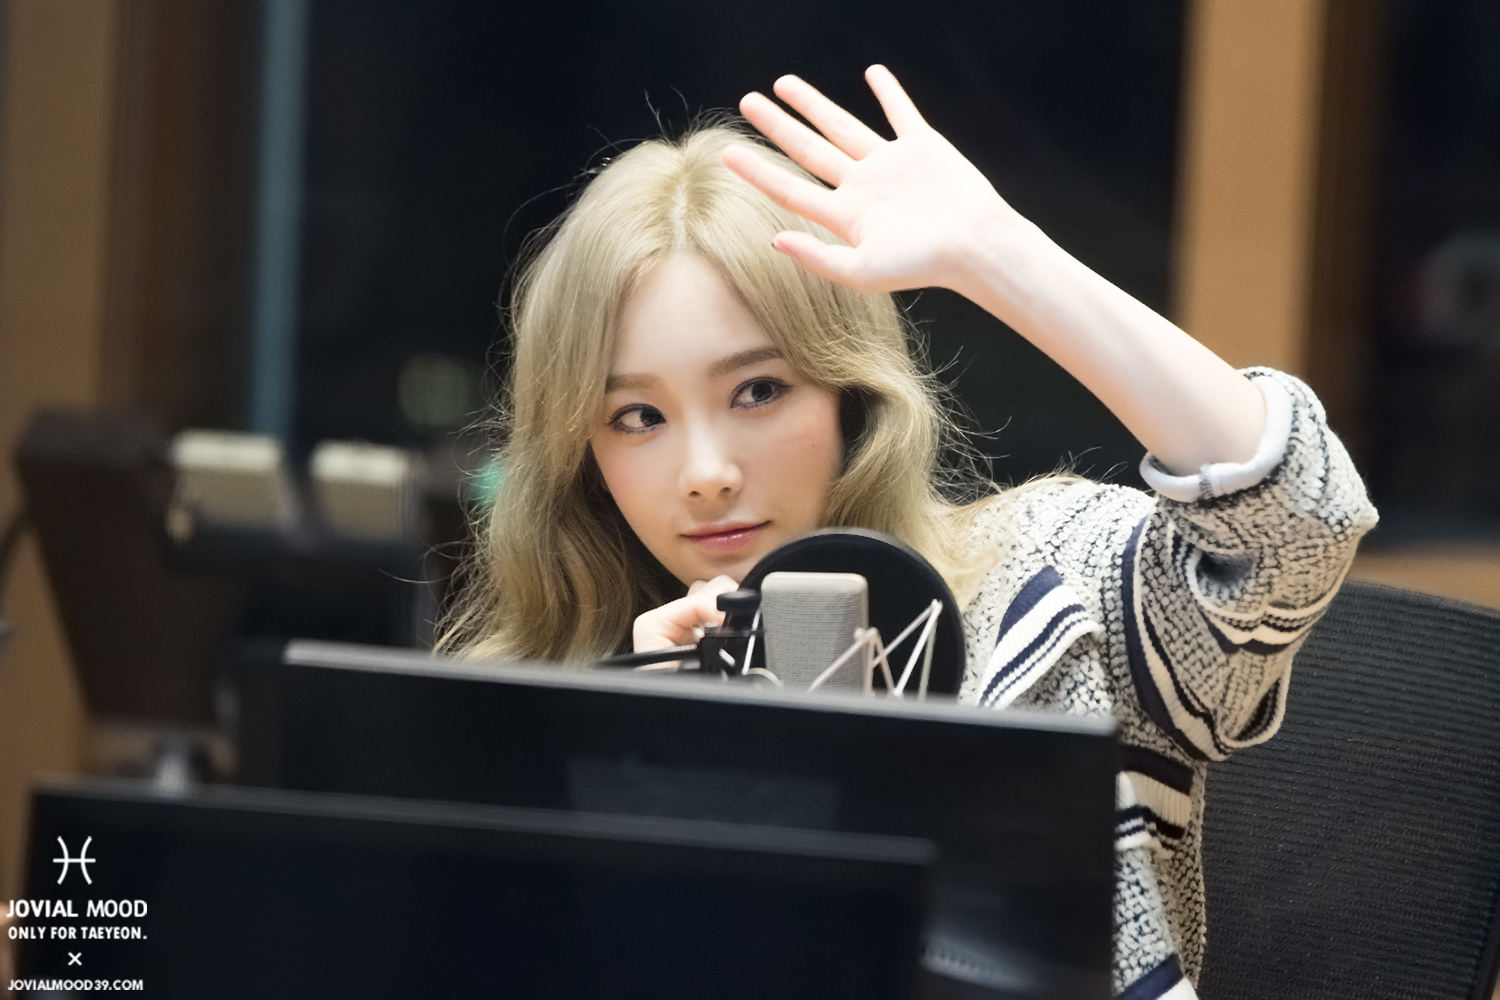 [OTHER][06-02-2015]Hình ảnh mới nhất từ DJ Sunny tại Radio MBC FM4U - "FM Date" - Page 32 28643328614_bdbeaf058f_o